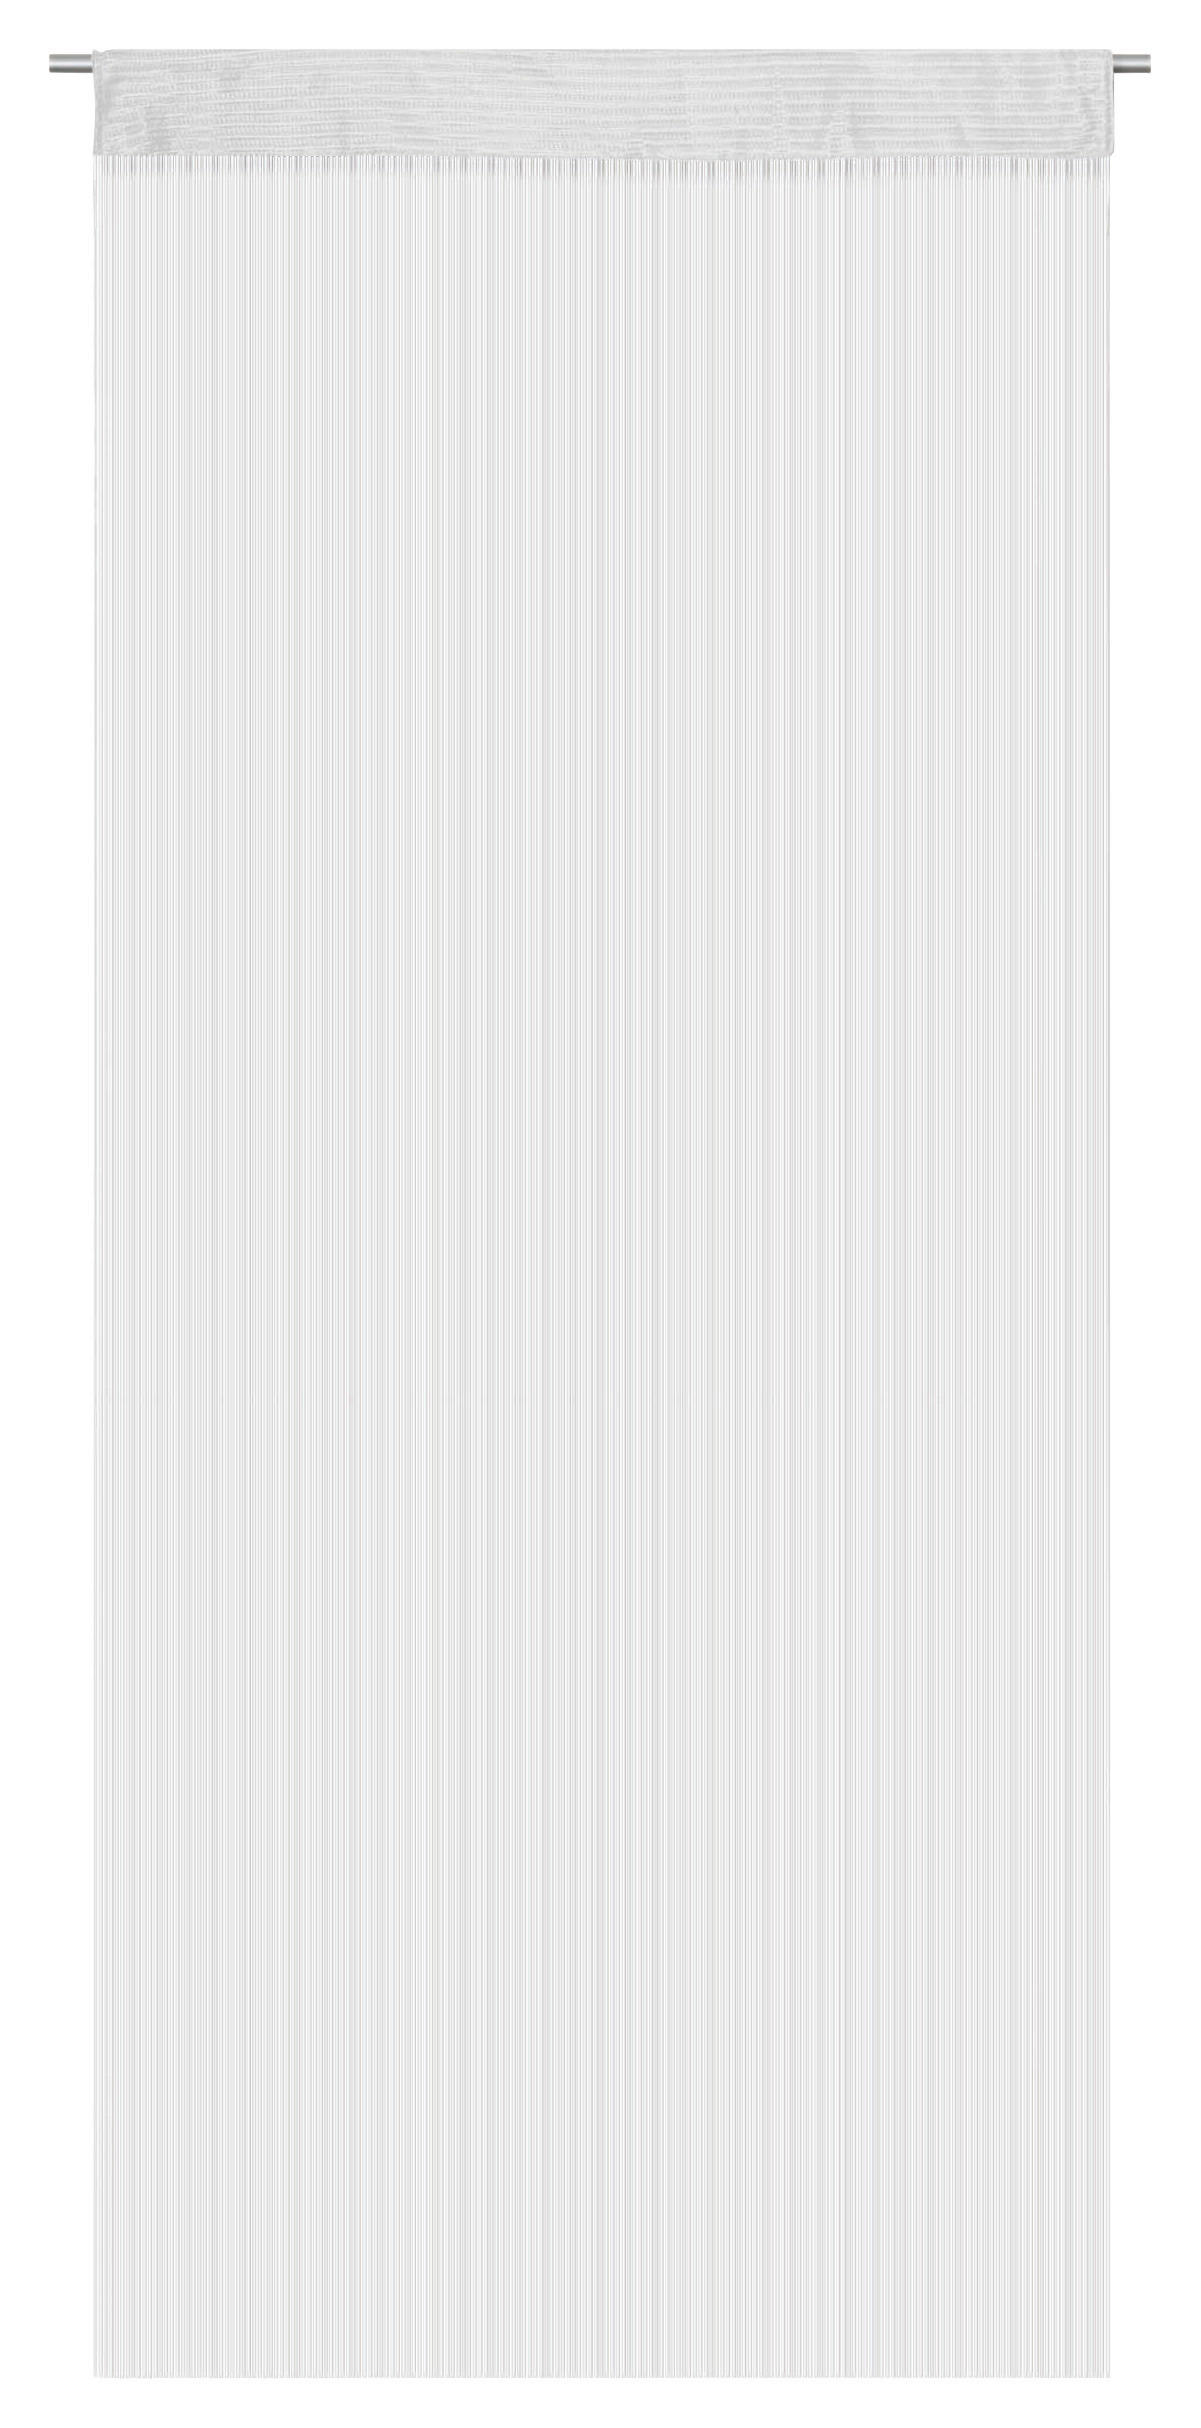 Fadenvorhang String weiß B/L: ca. 90x280 cm String - weiß (90,00/280,00cm)